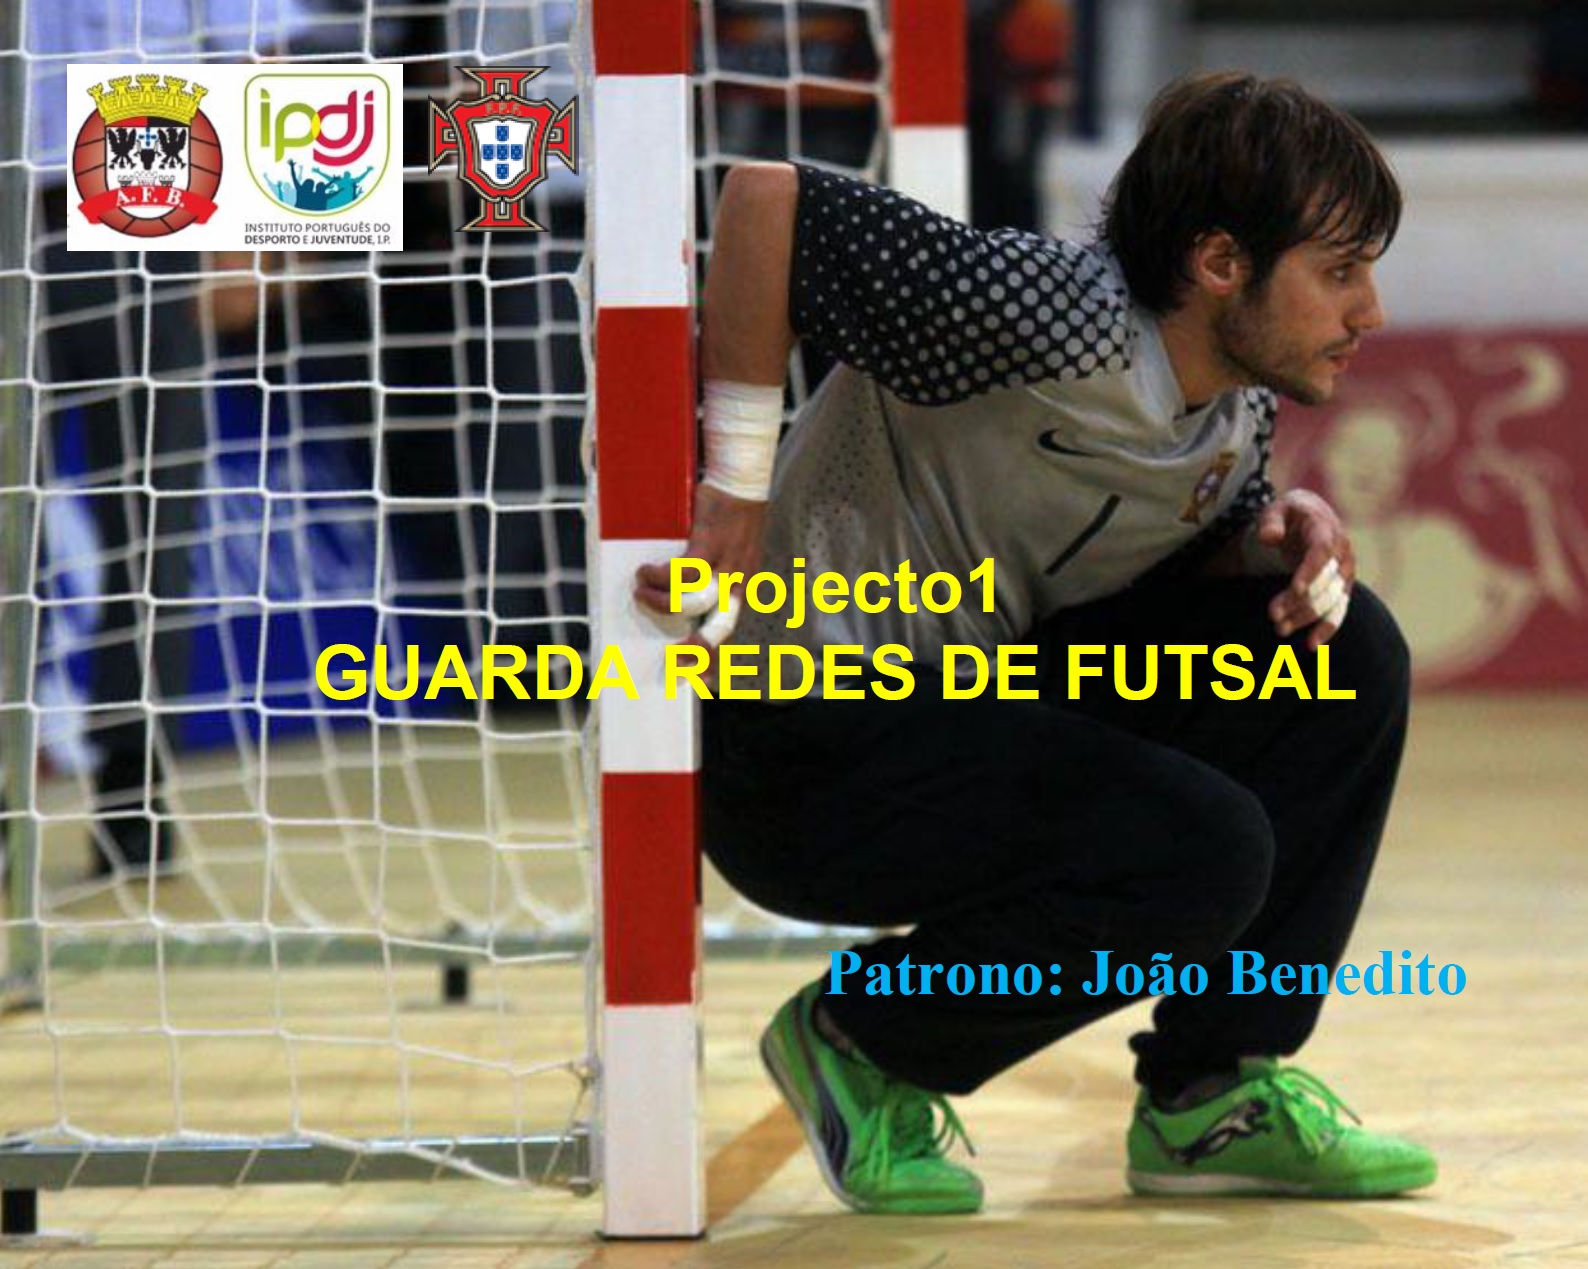 Jornada de formação de Futsal